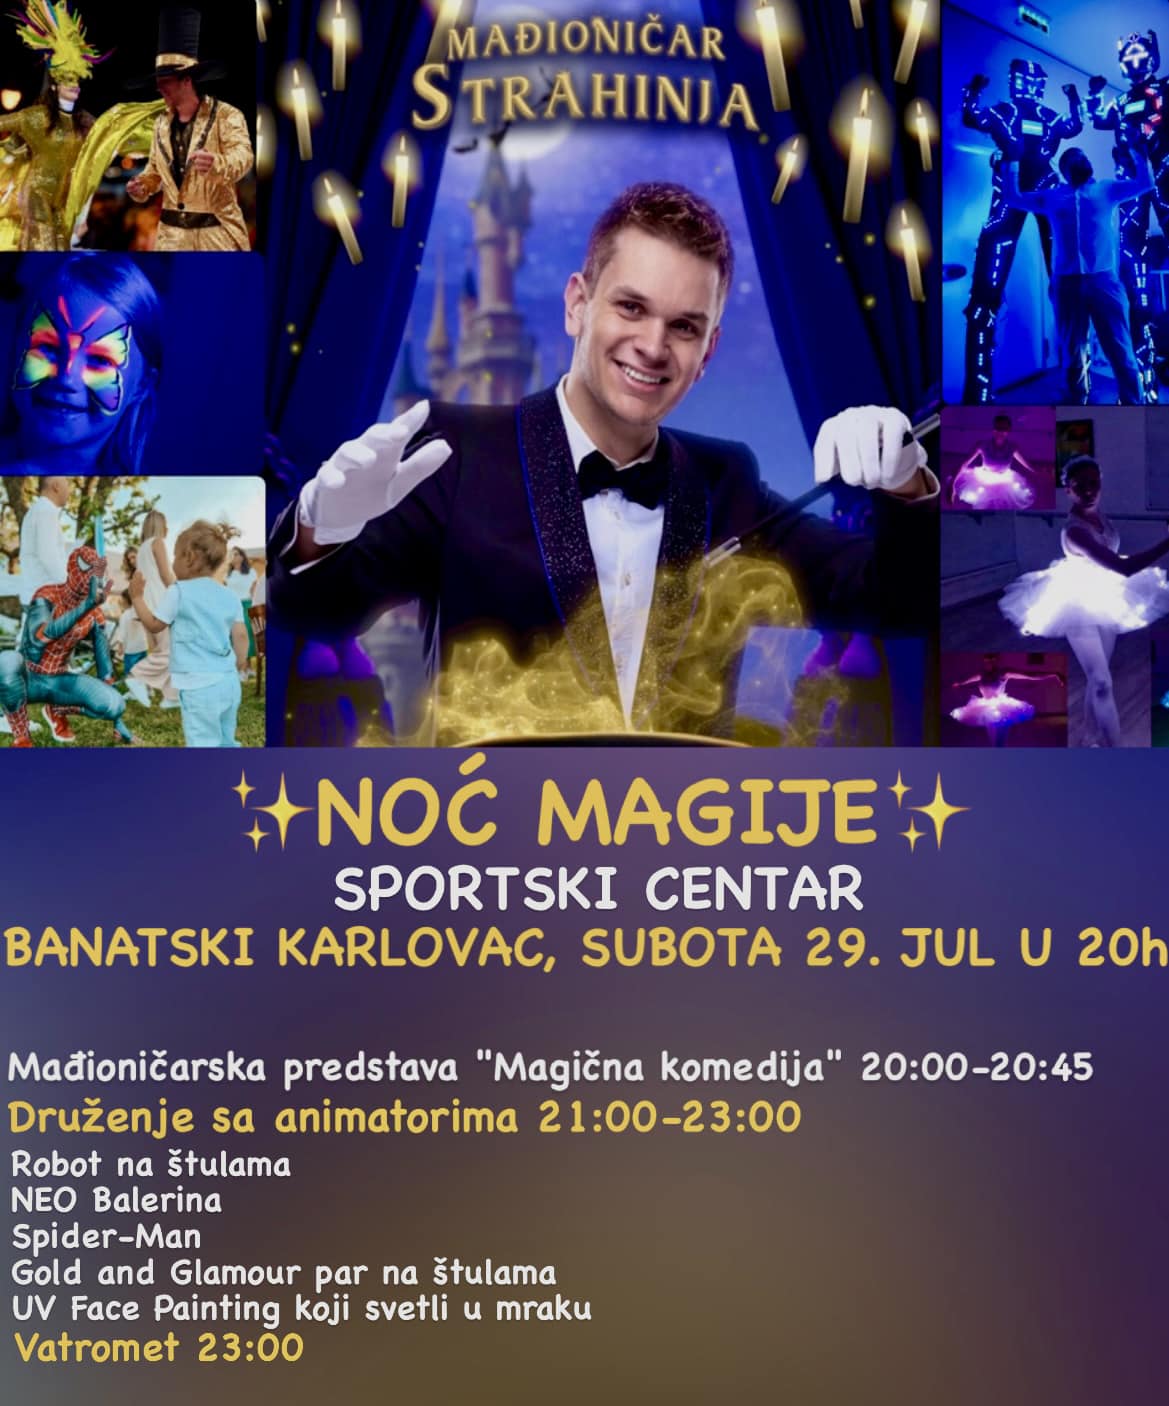 Noć magije 29. jula u Banatskom Karlovcu